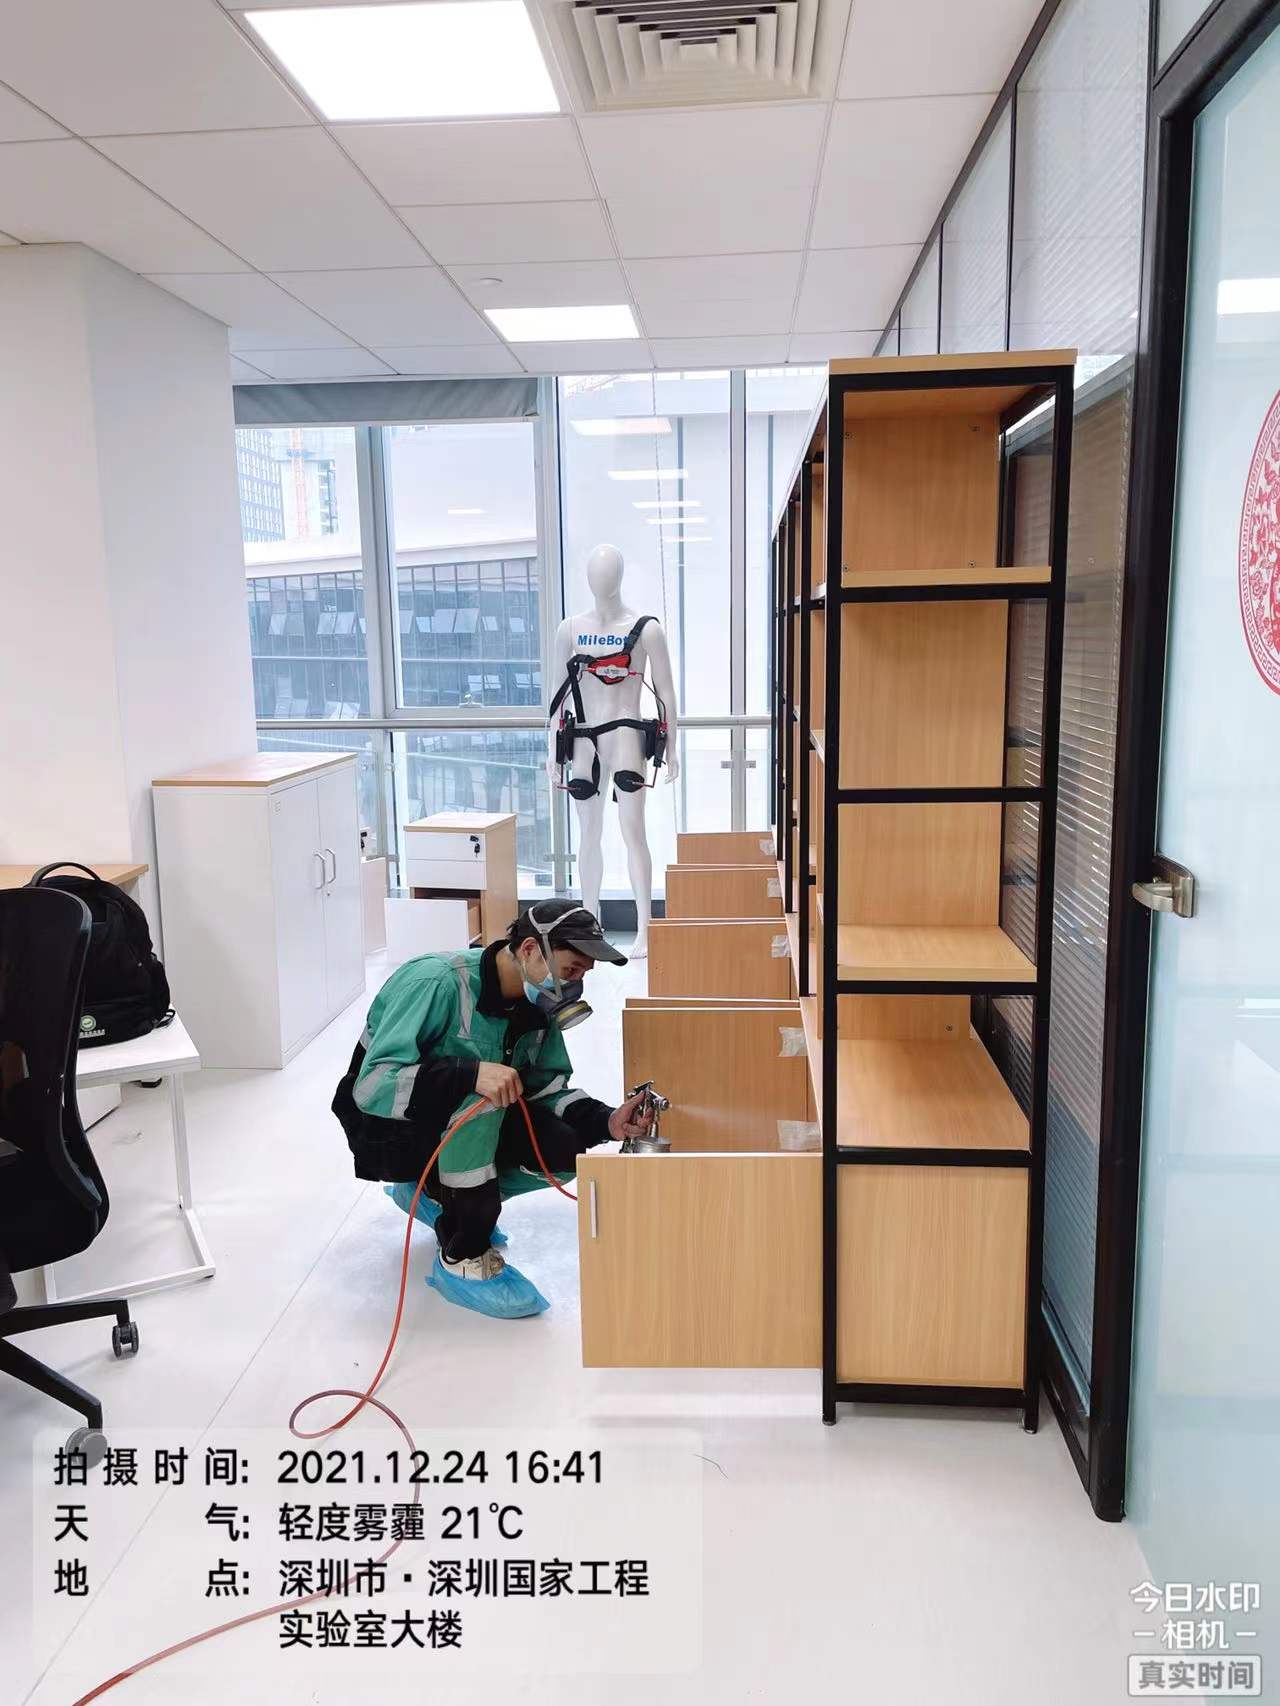 深圳南山区迈步机器人有限公司施工现场有码-8c9425667b31fb9f7c9cf690ed33840